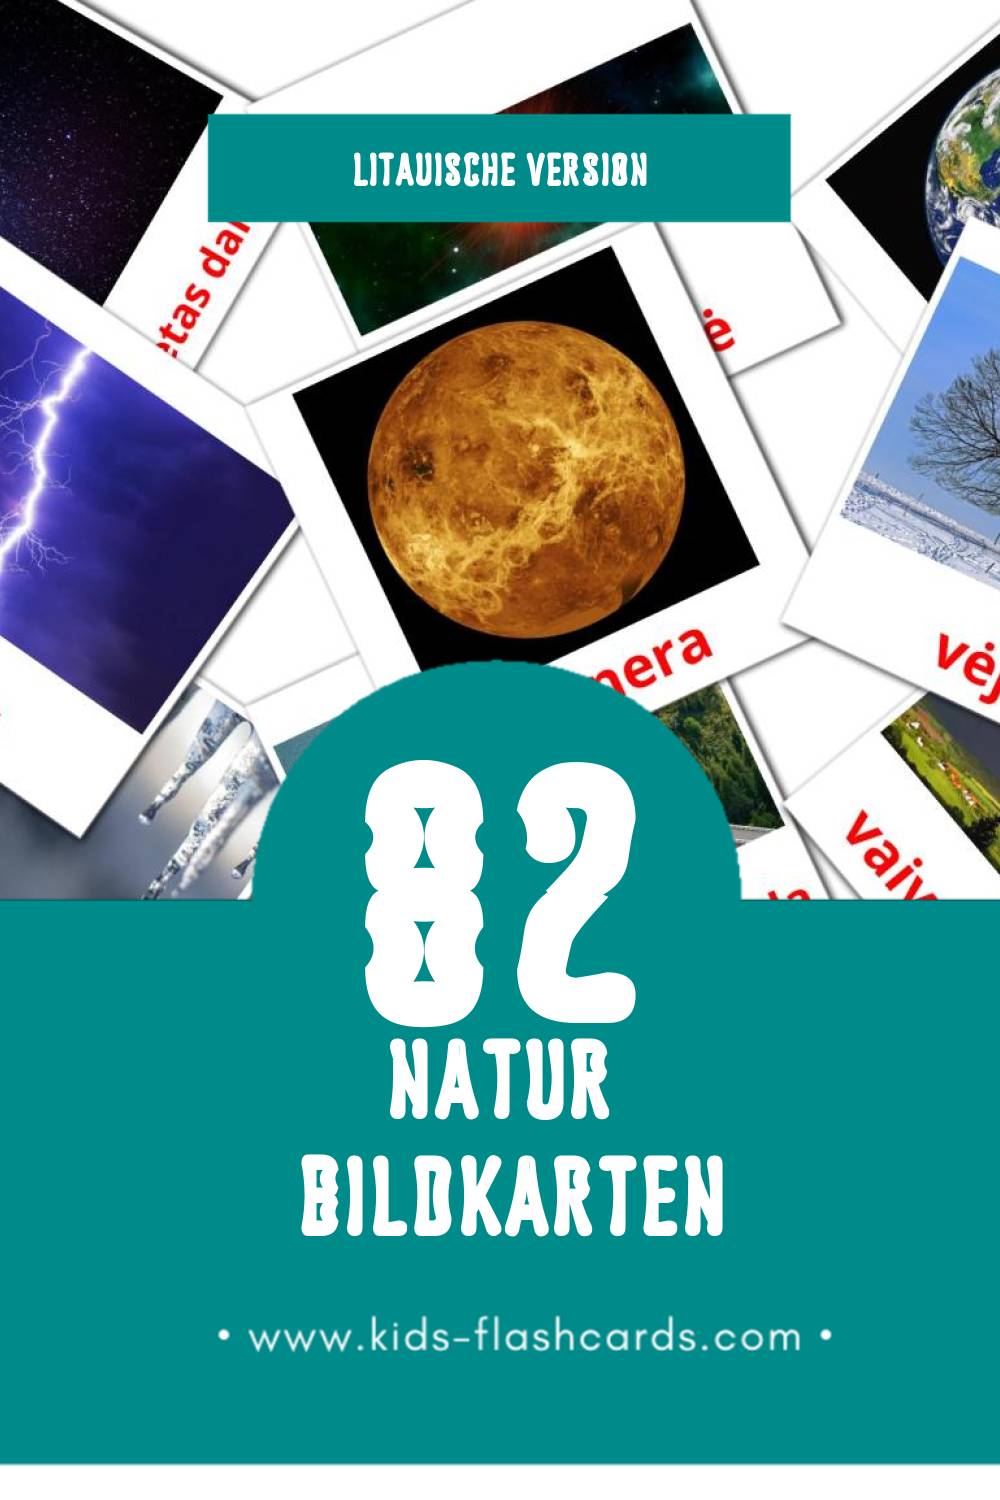 Visual Gamta Flashcards für Kleinkinder (82 Karten in Litauisch)